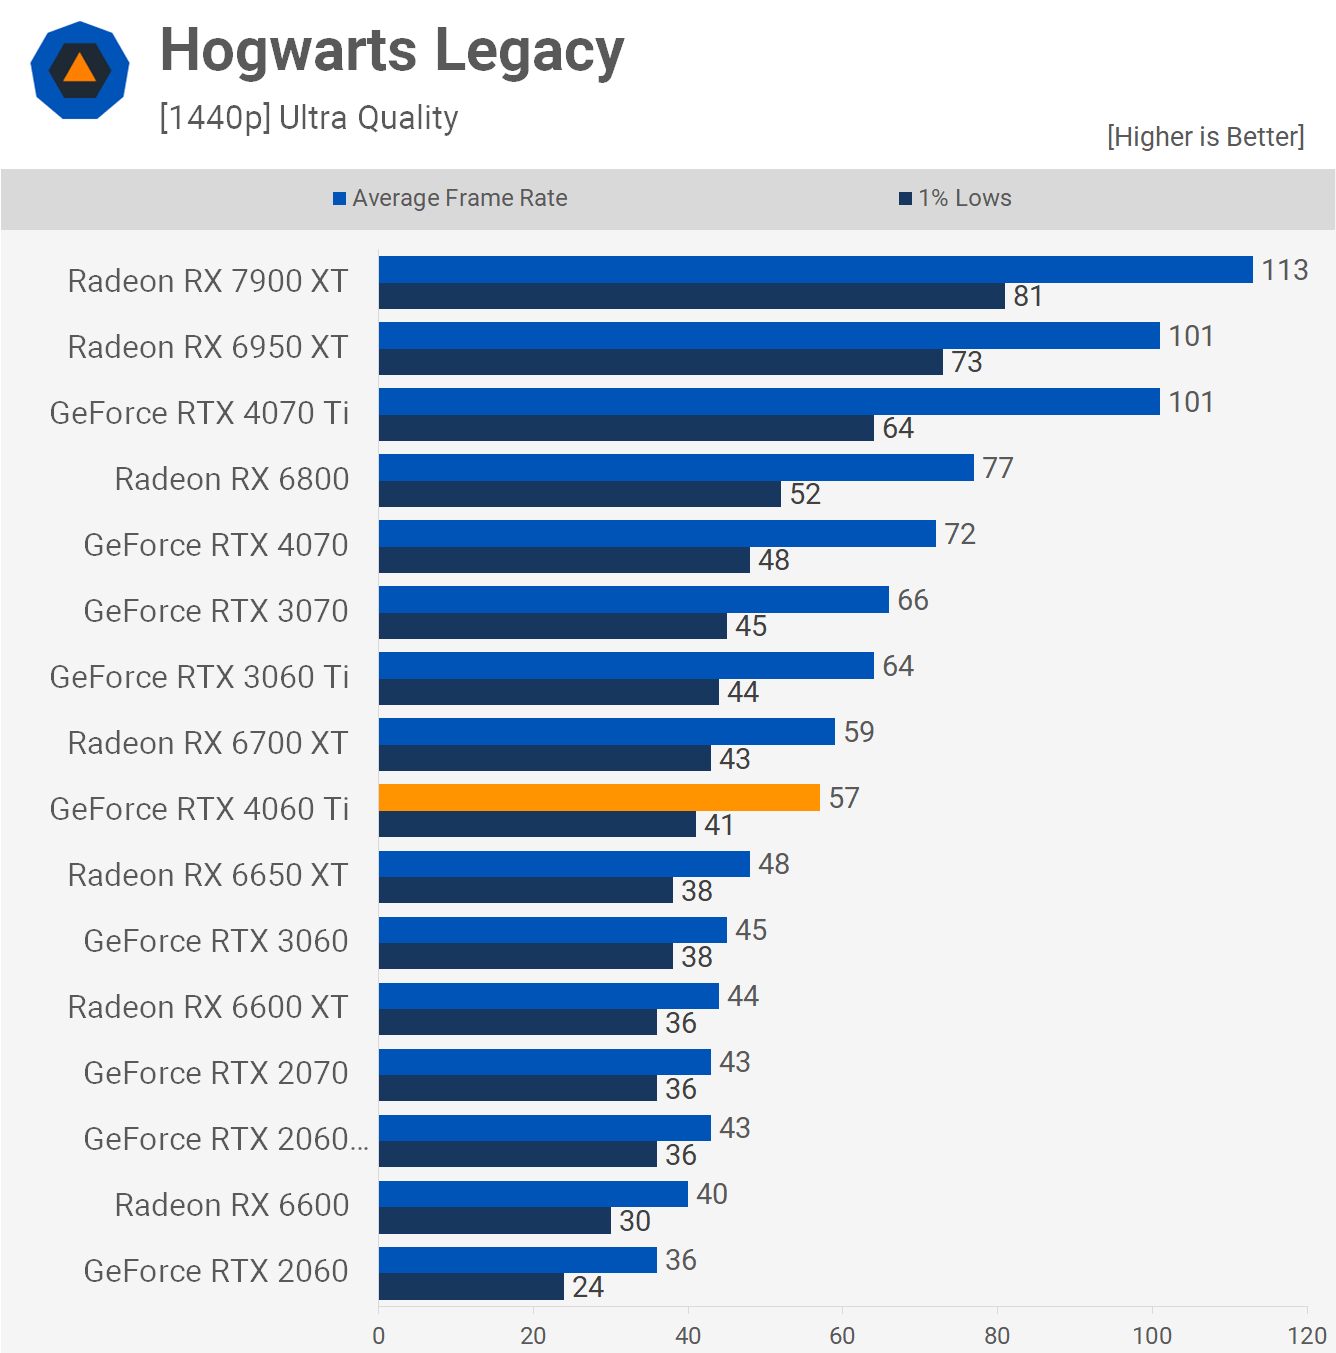 Hogwarts 1440p